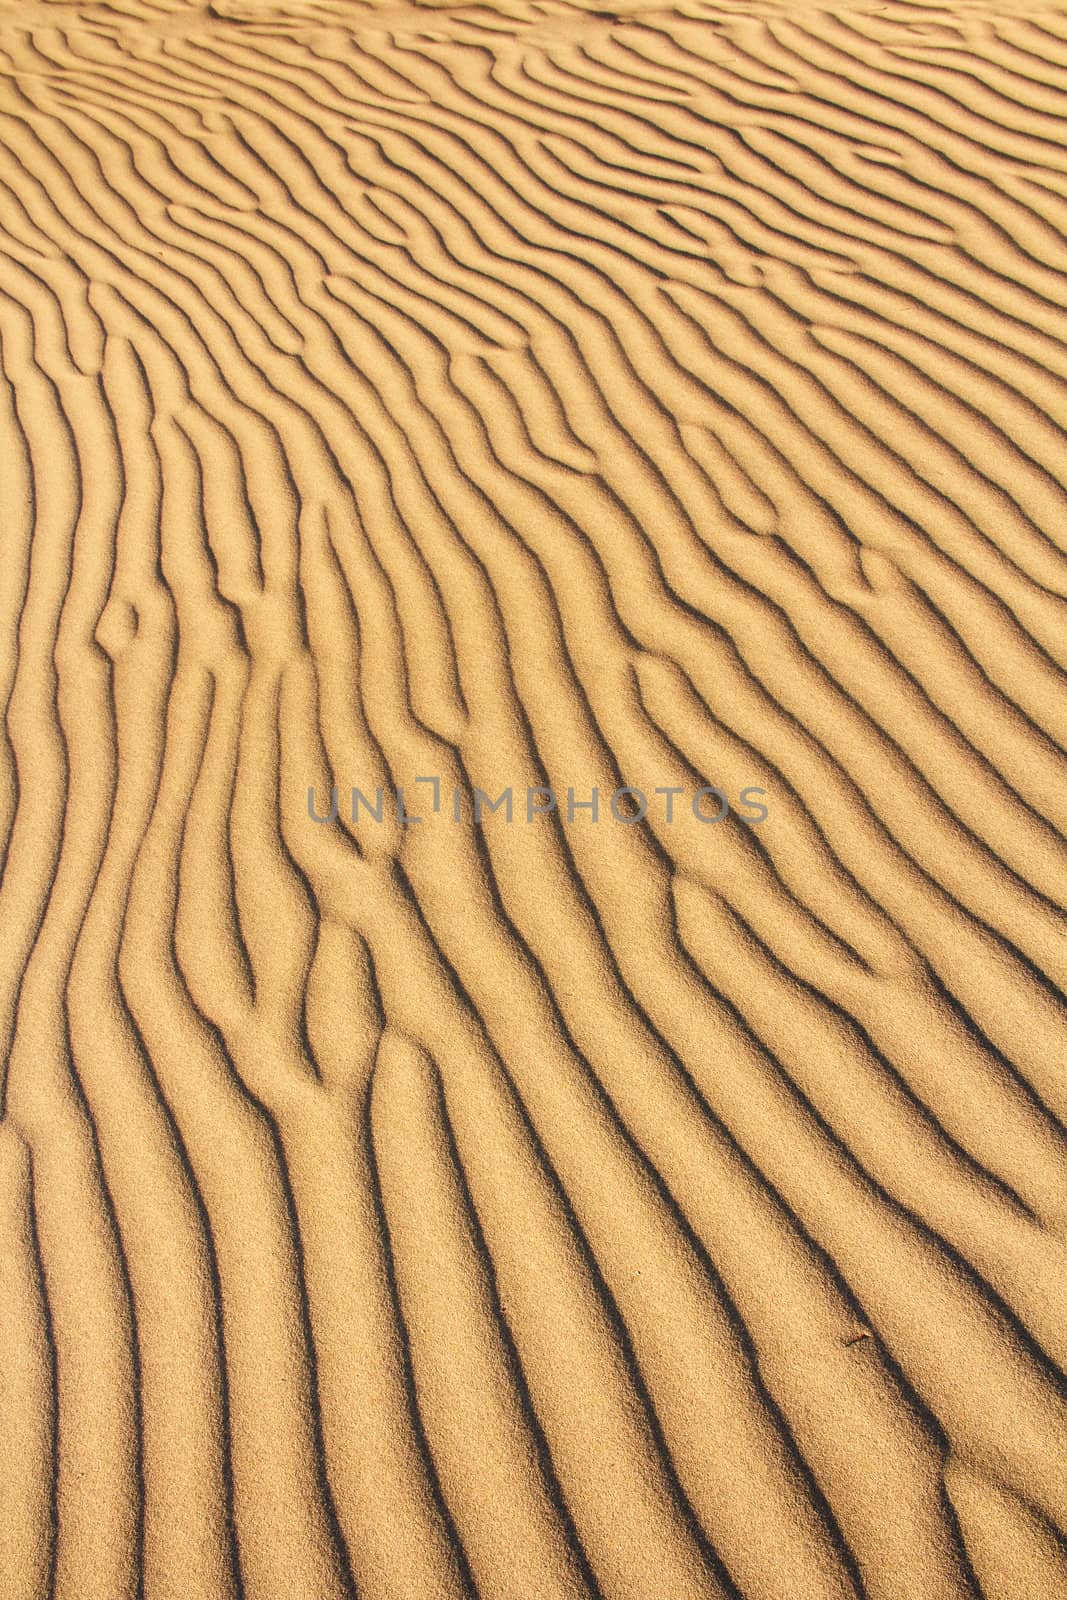 golden sand dunes with an irregular texture